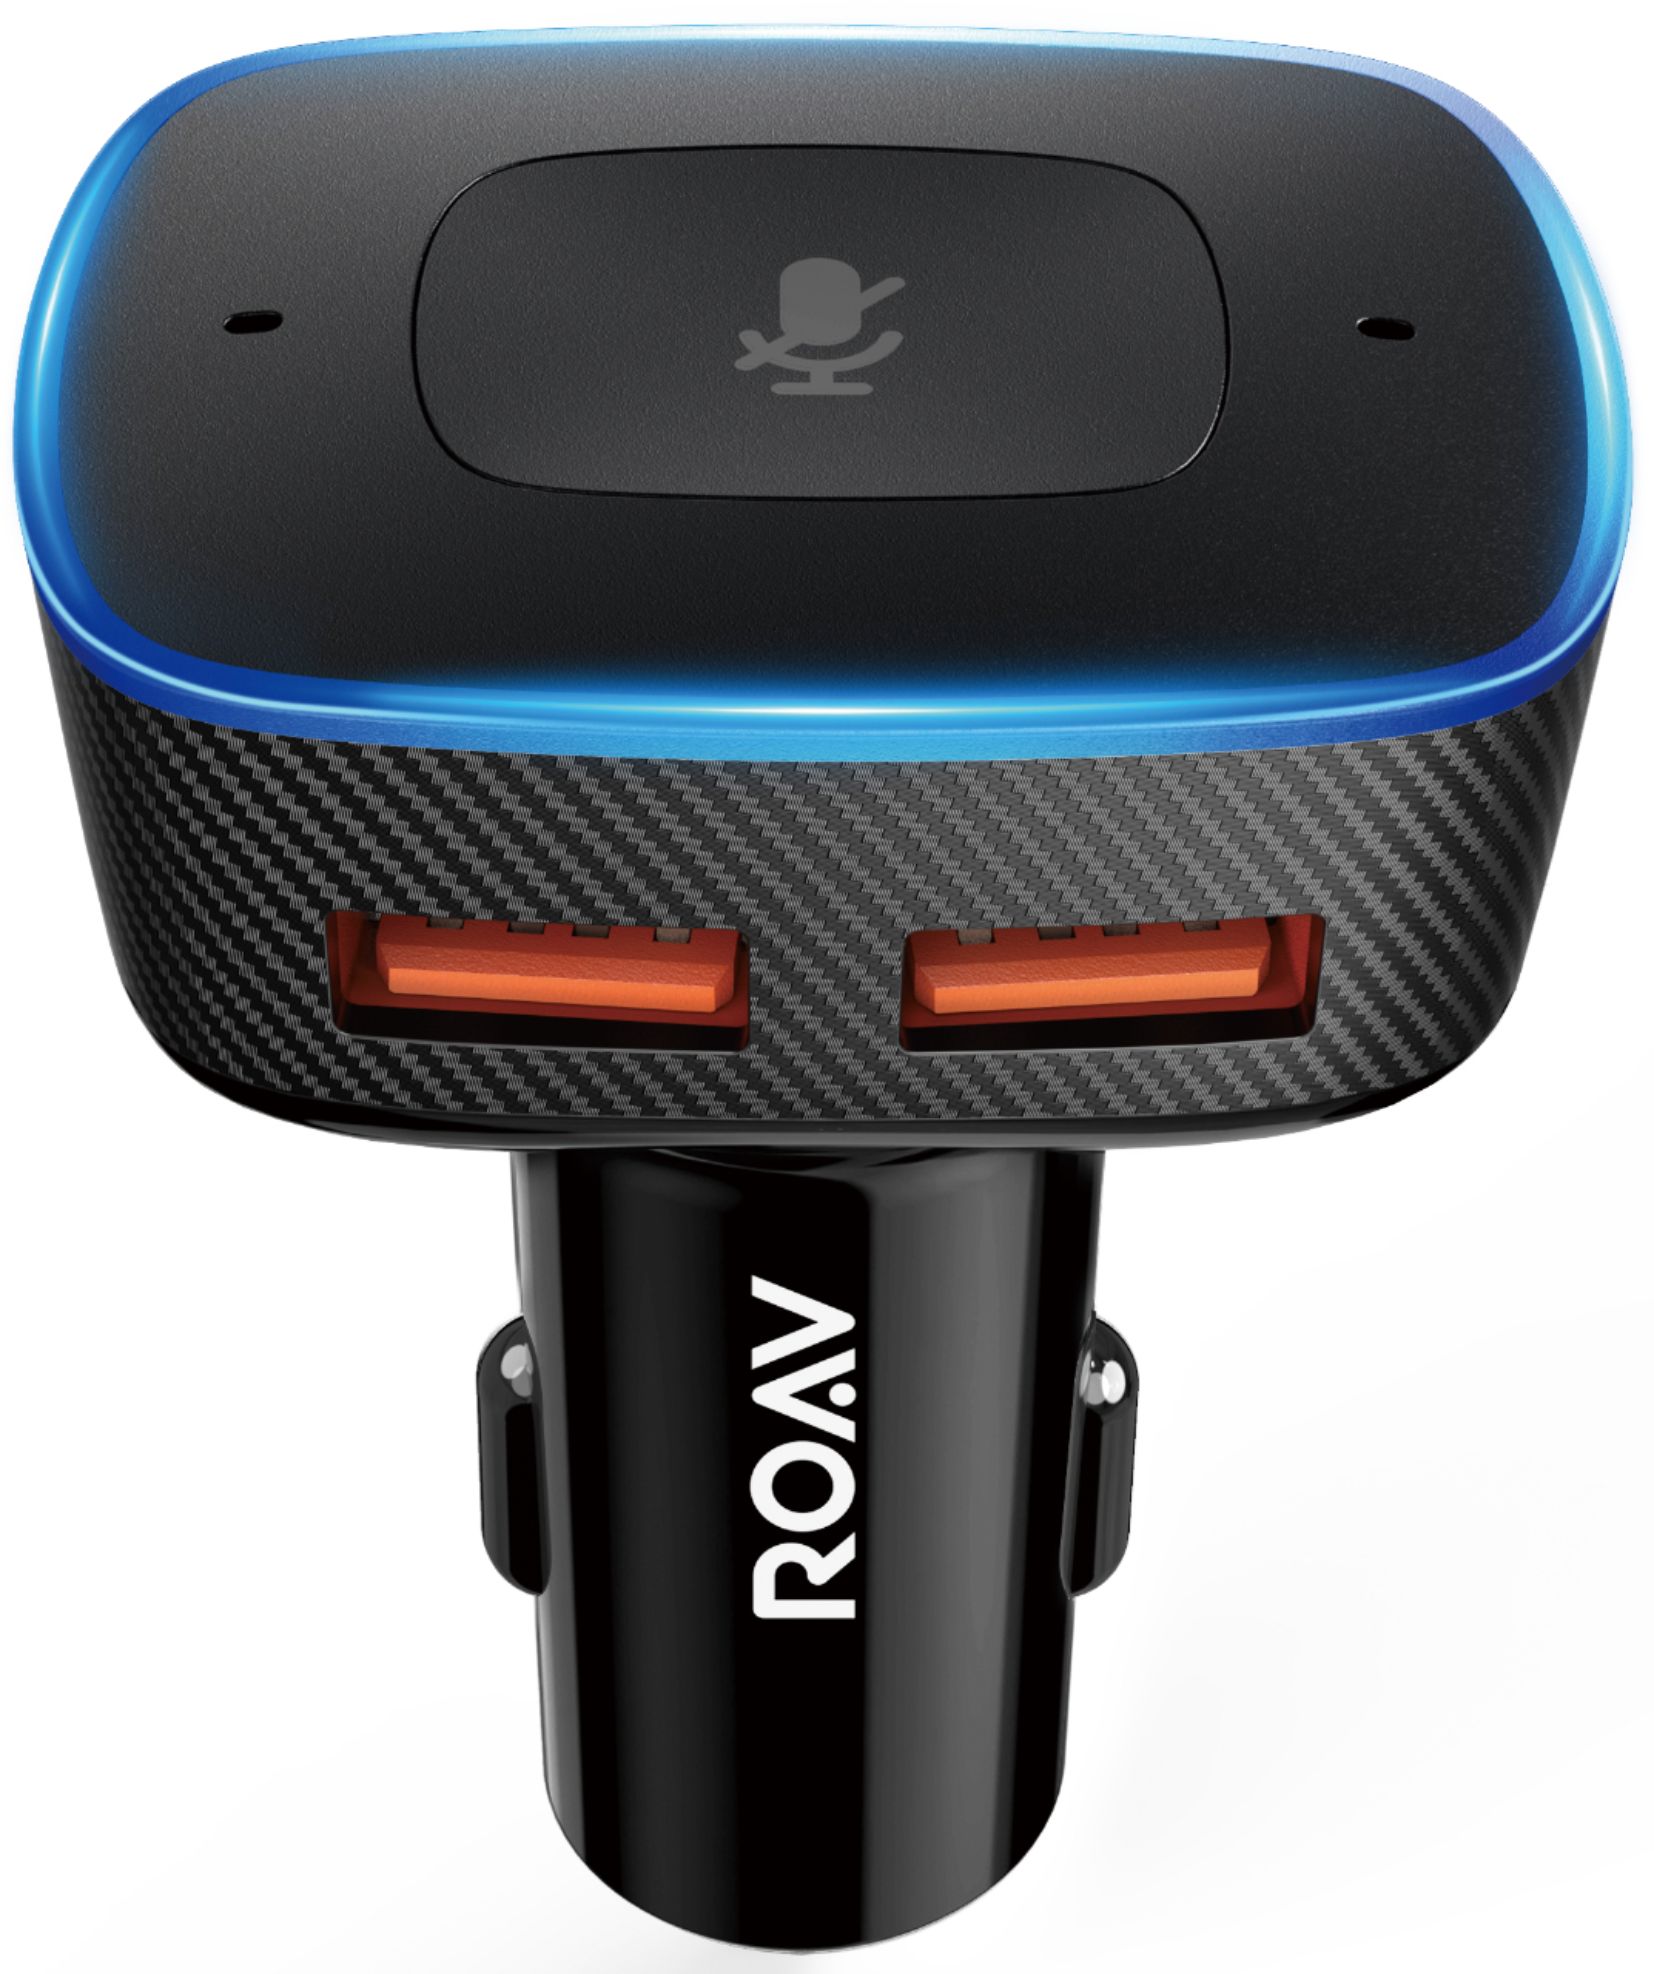 Best Buy: Anker ROAV Viva Pro Alexa Enabled 2-Port USB Vehicle